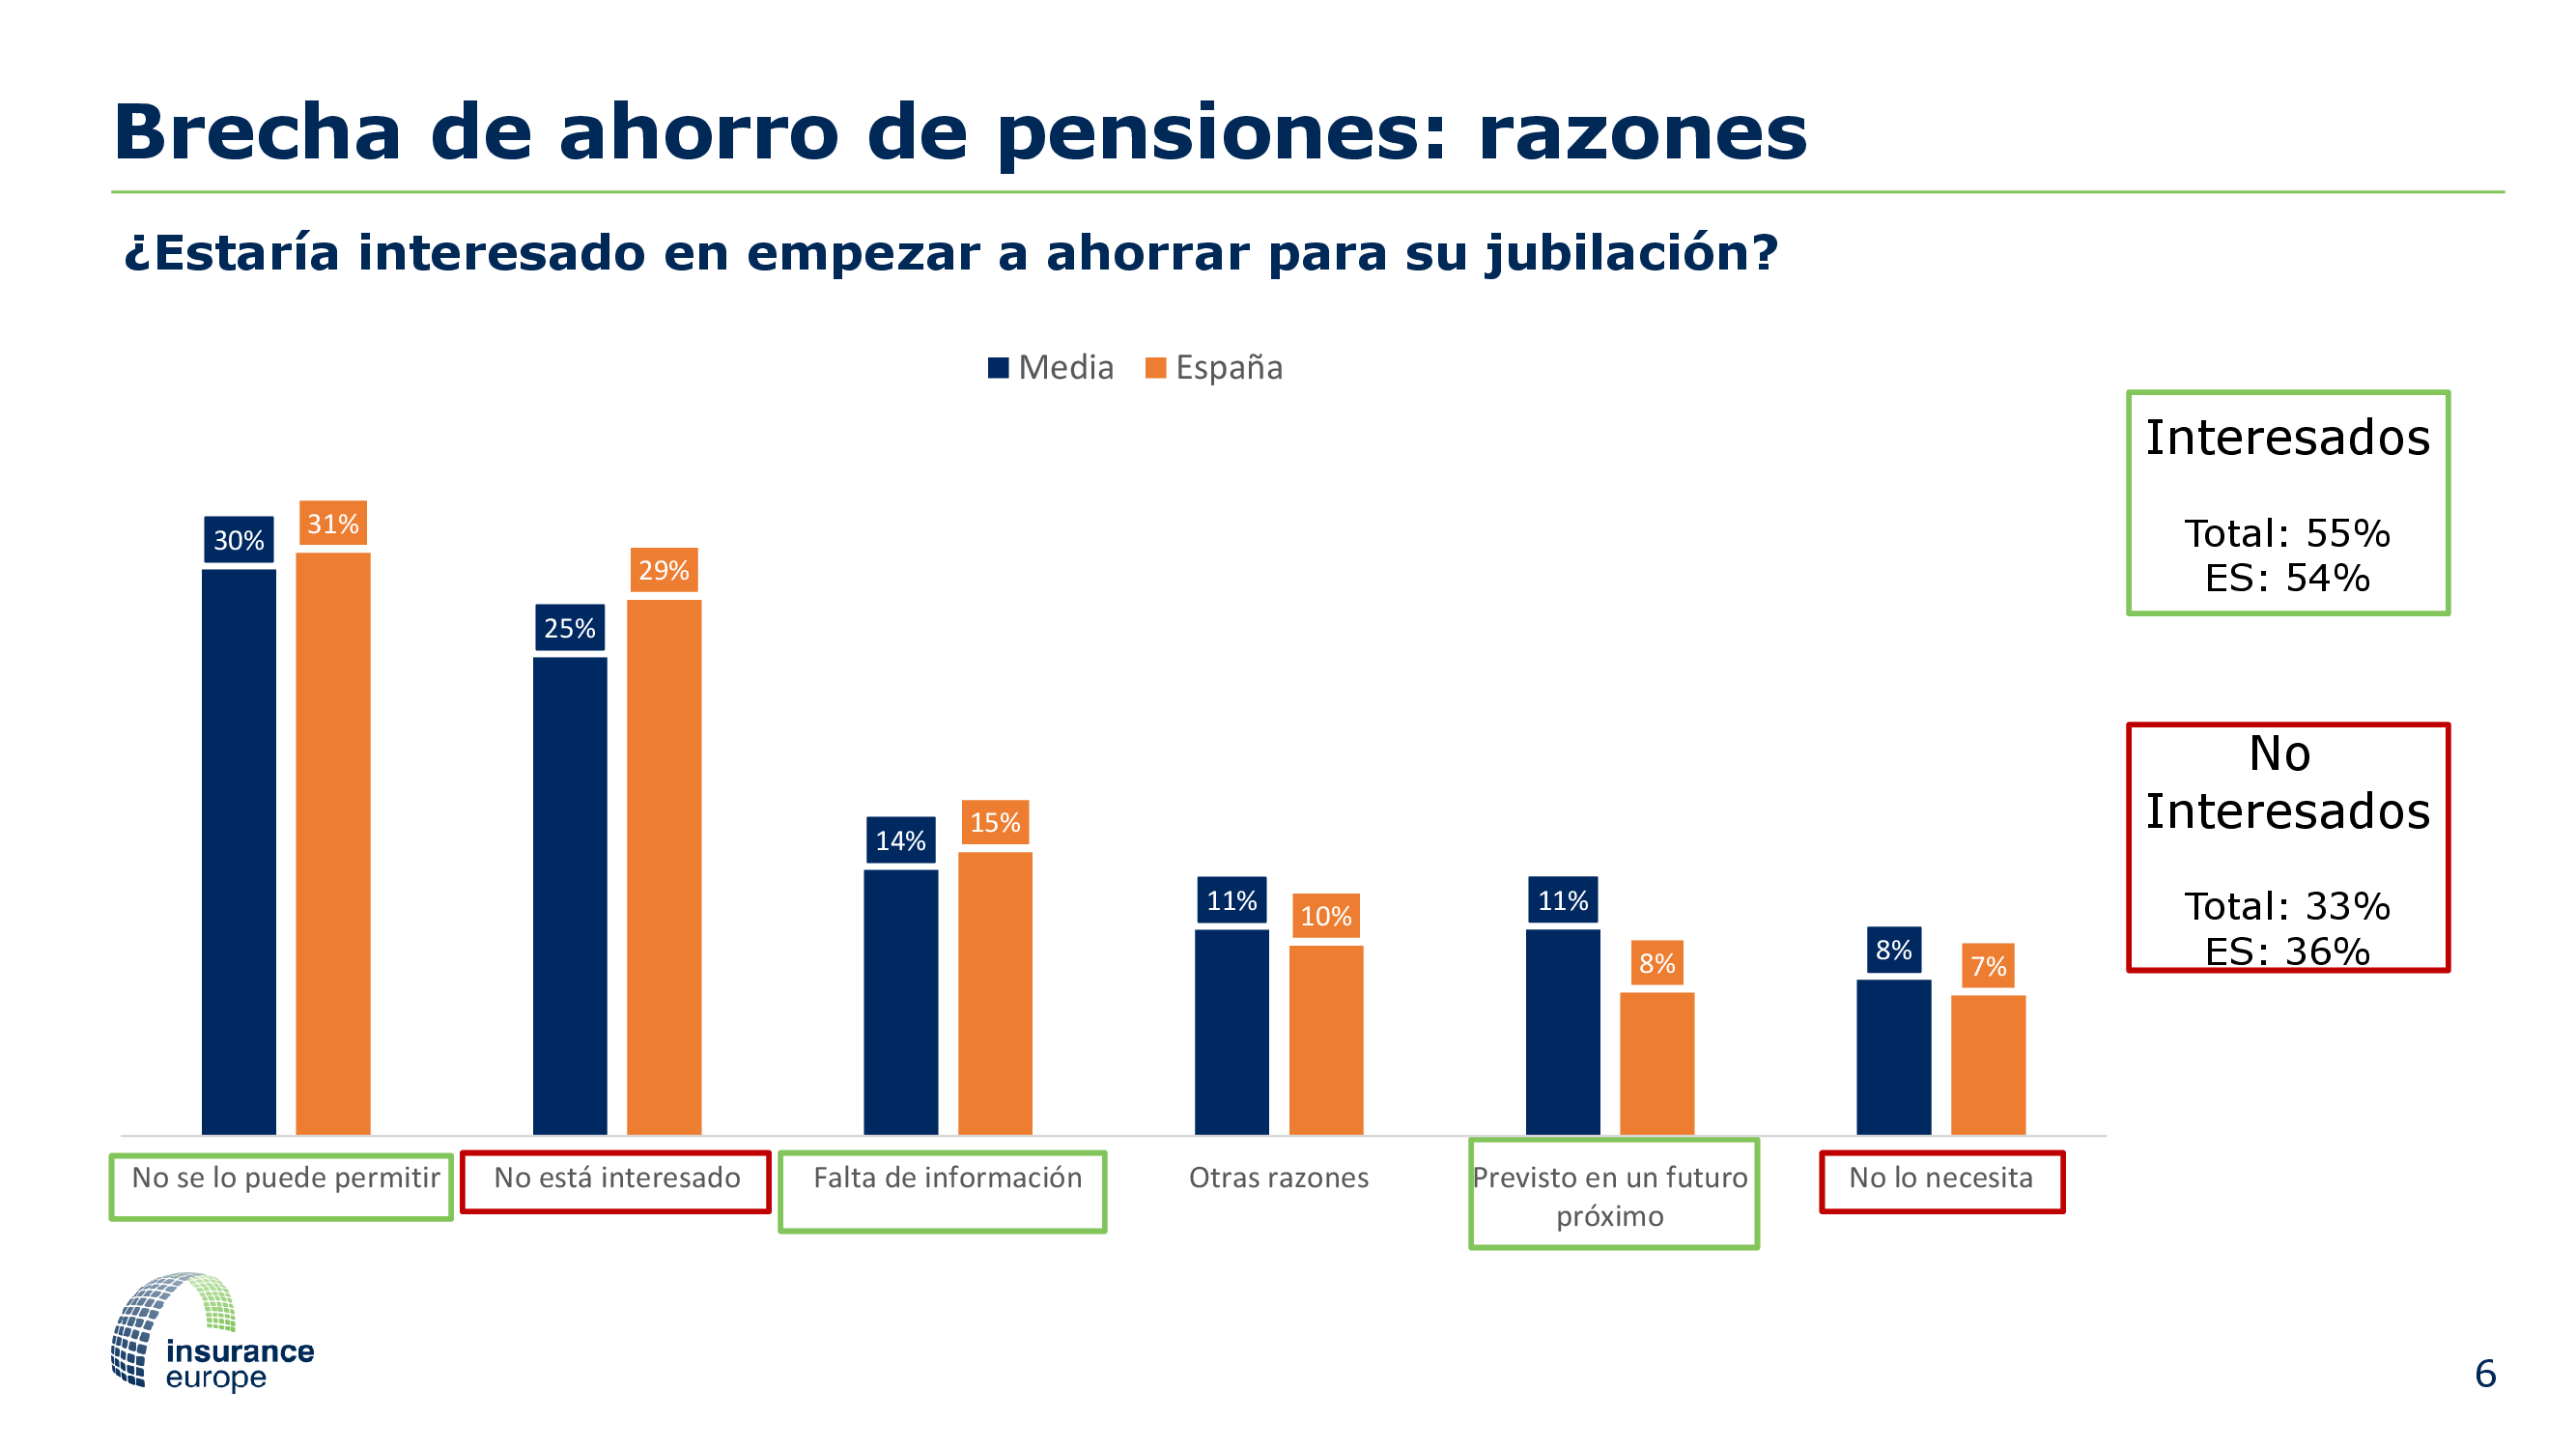 Encuesta paneuropea de pensiones - Brecha de ahorro de pensiones: razones